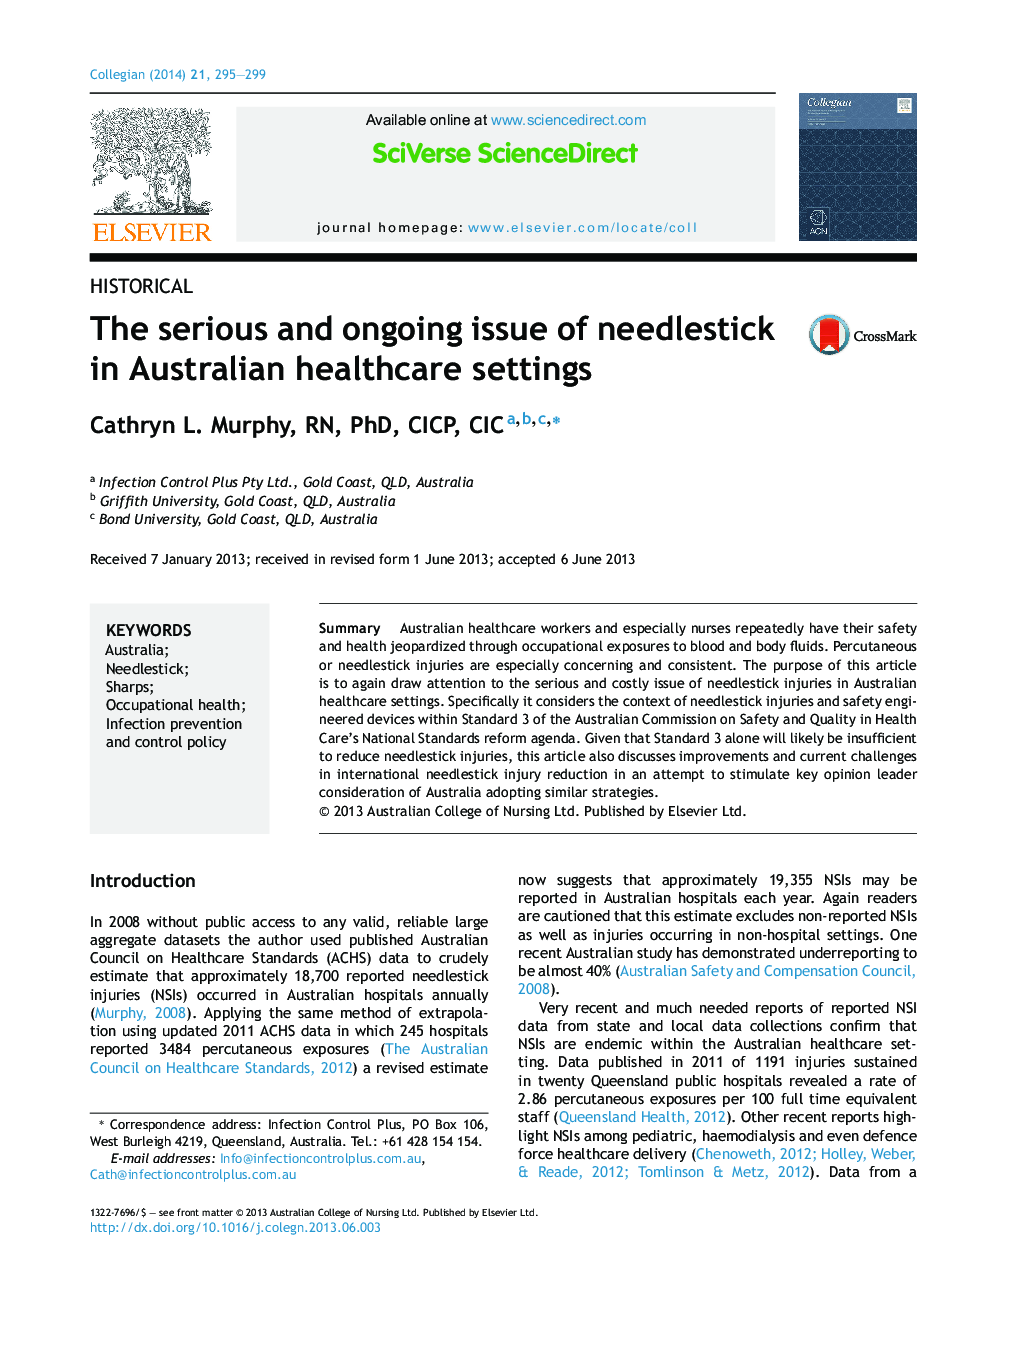 مسئله جدی و مداوم سرنگ در مراکز بهداشت و درمان استرالیا